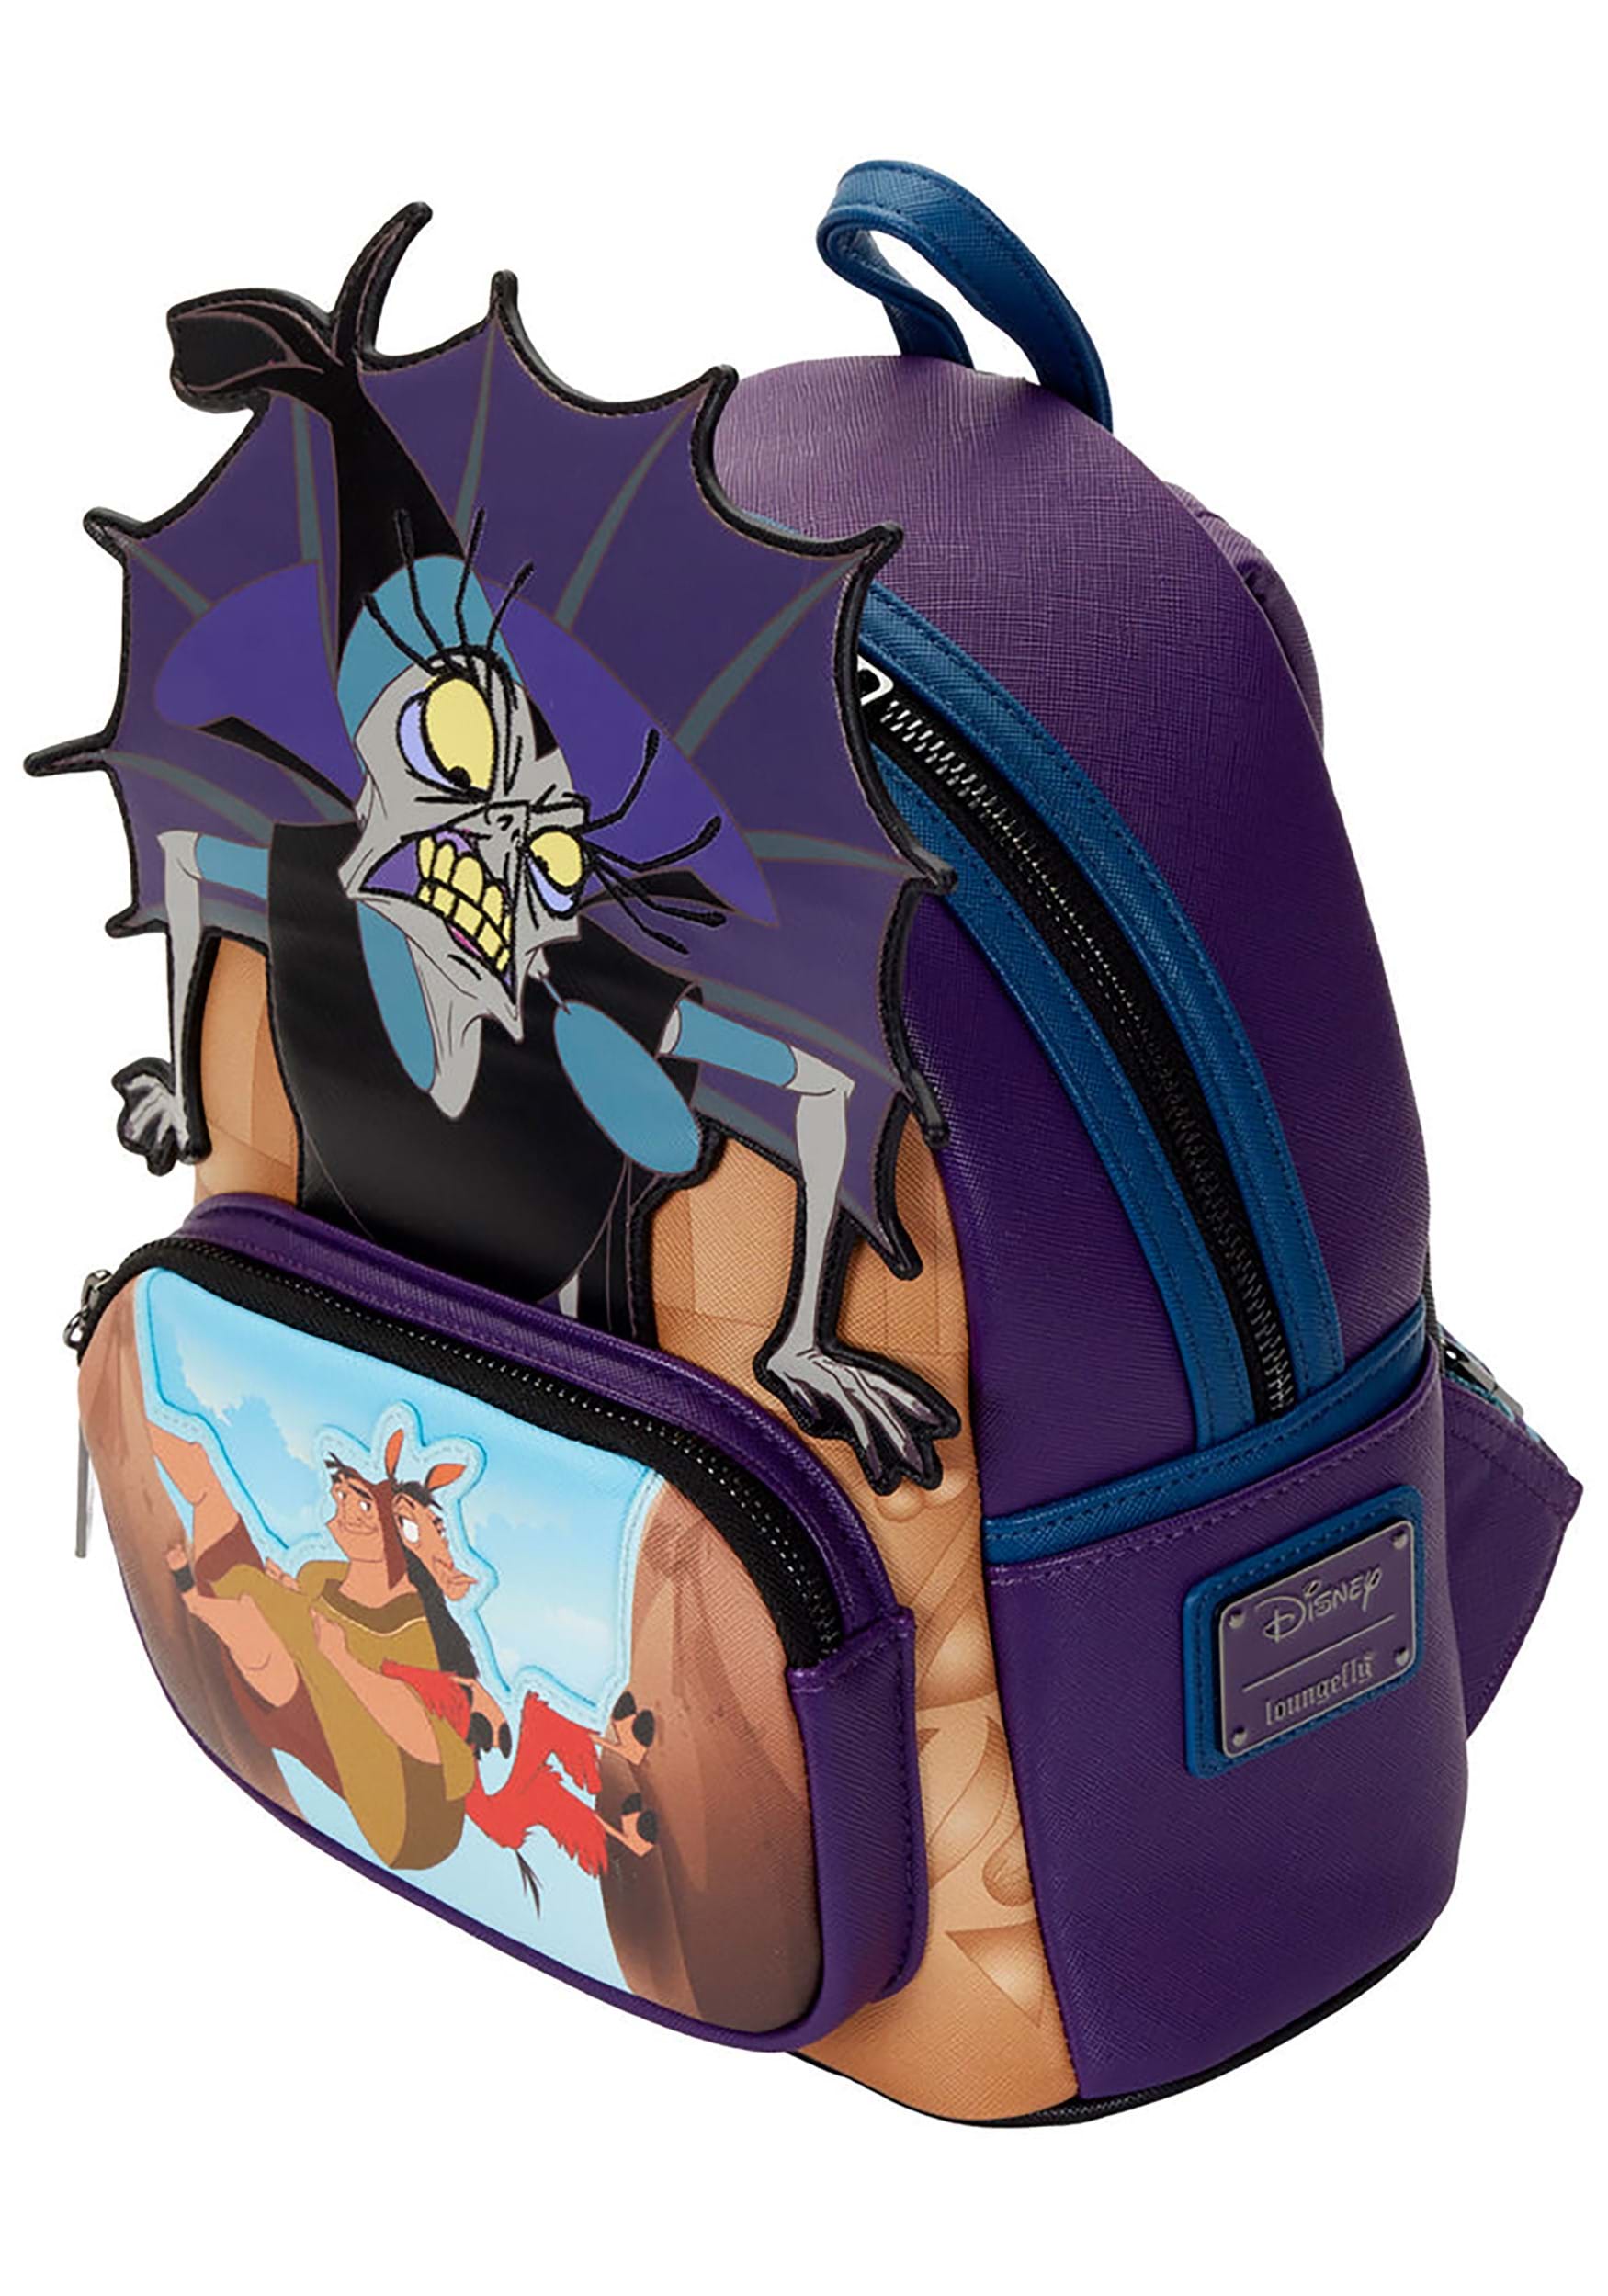 Maleficent Mini Backpack